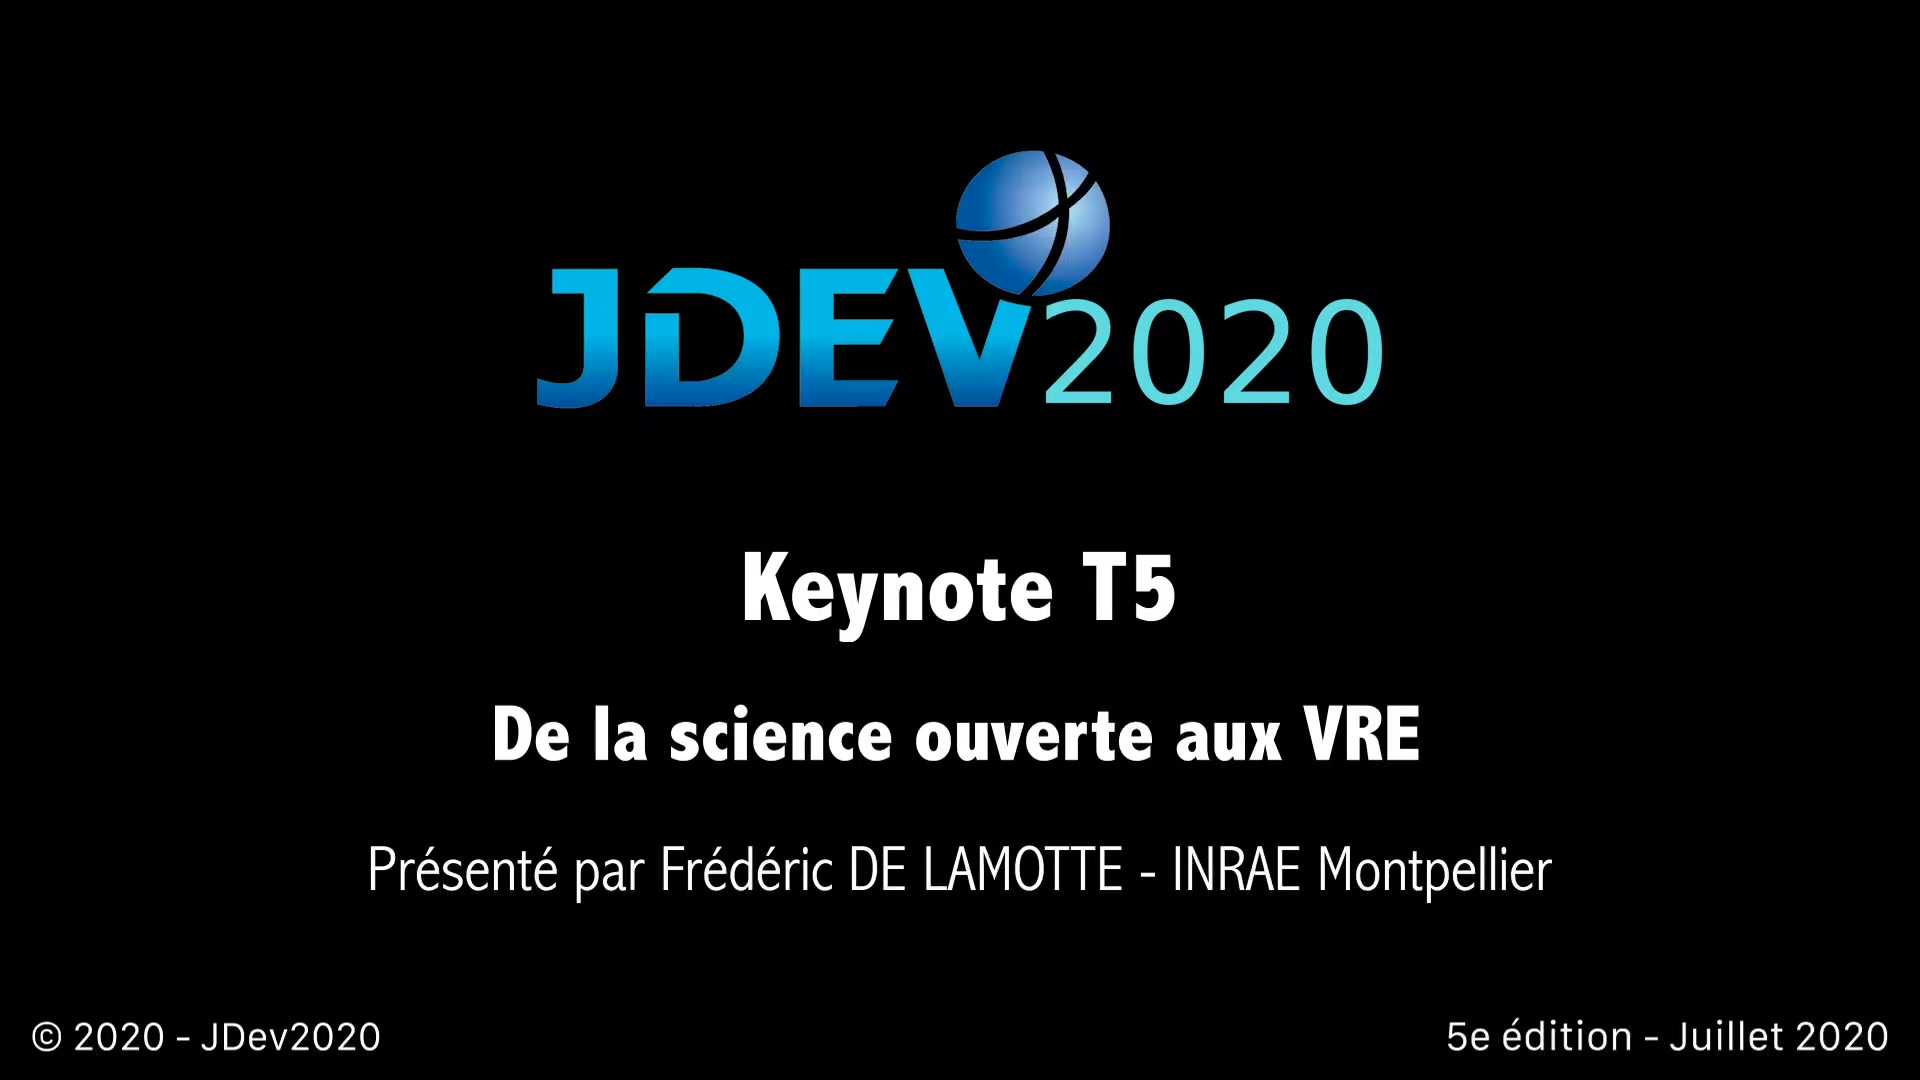 JDev2020 : T5 : Keynote : "De la science ouverte aux VRE"